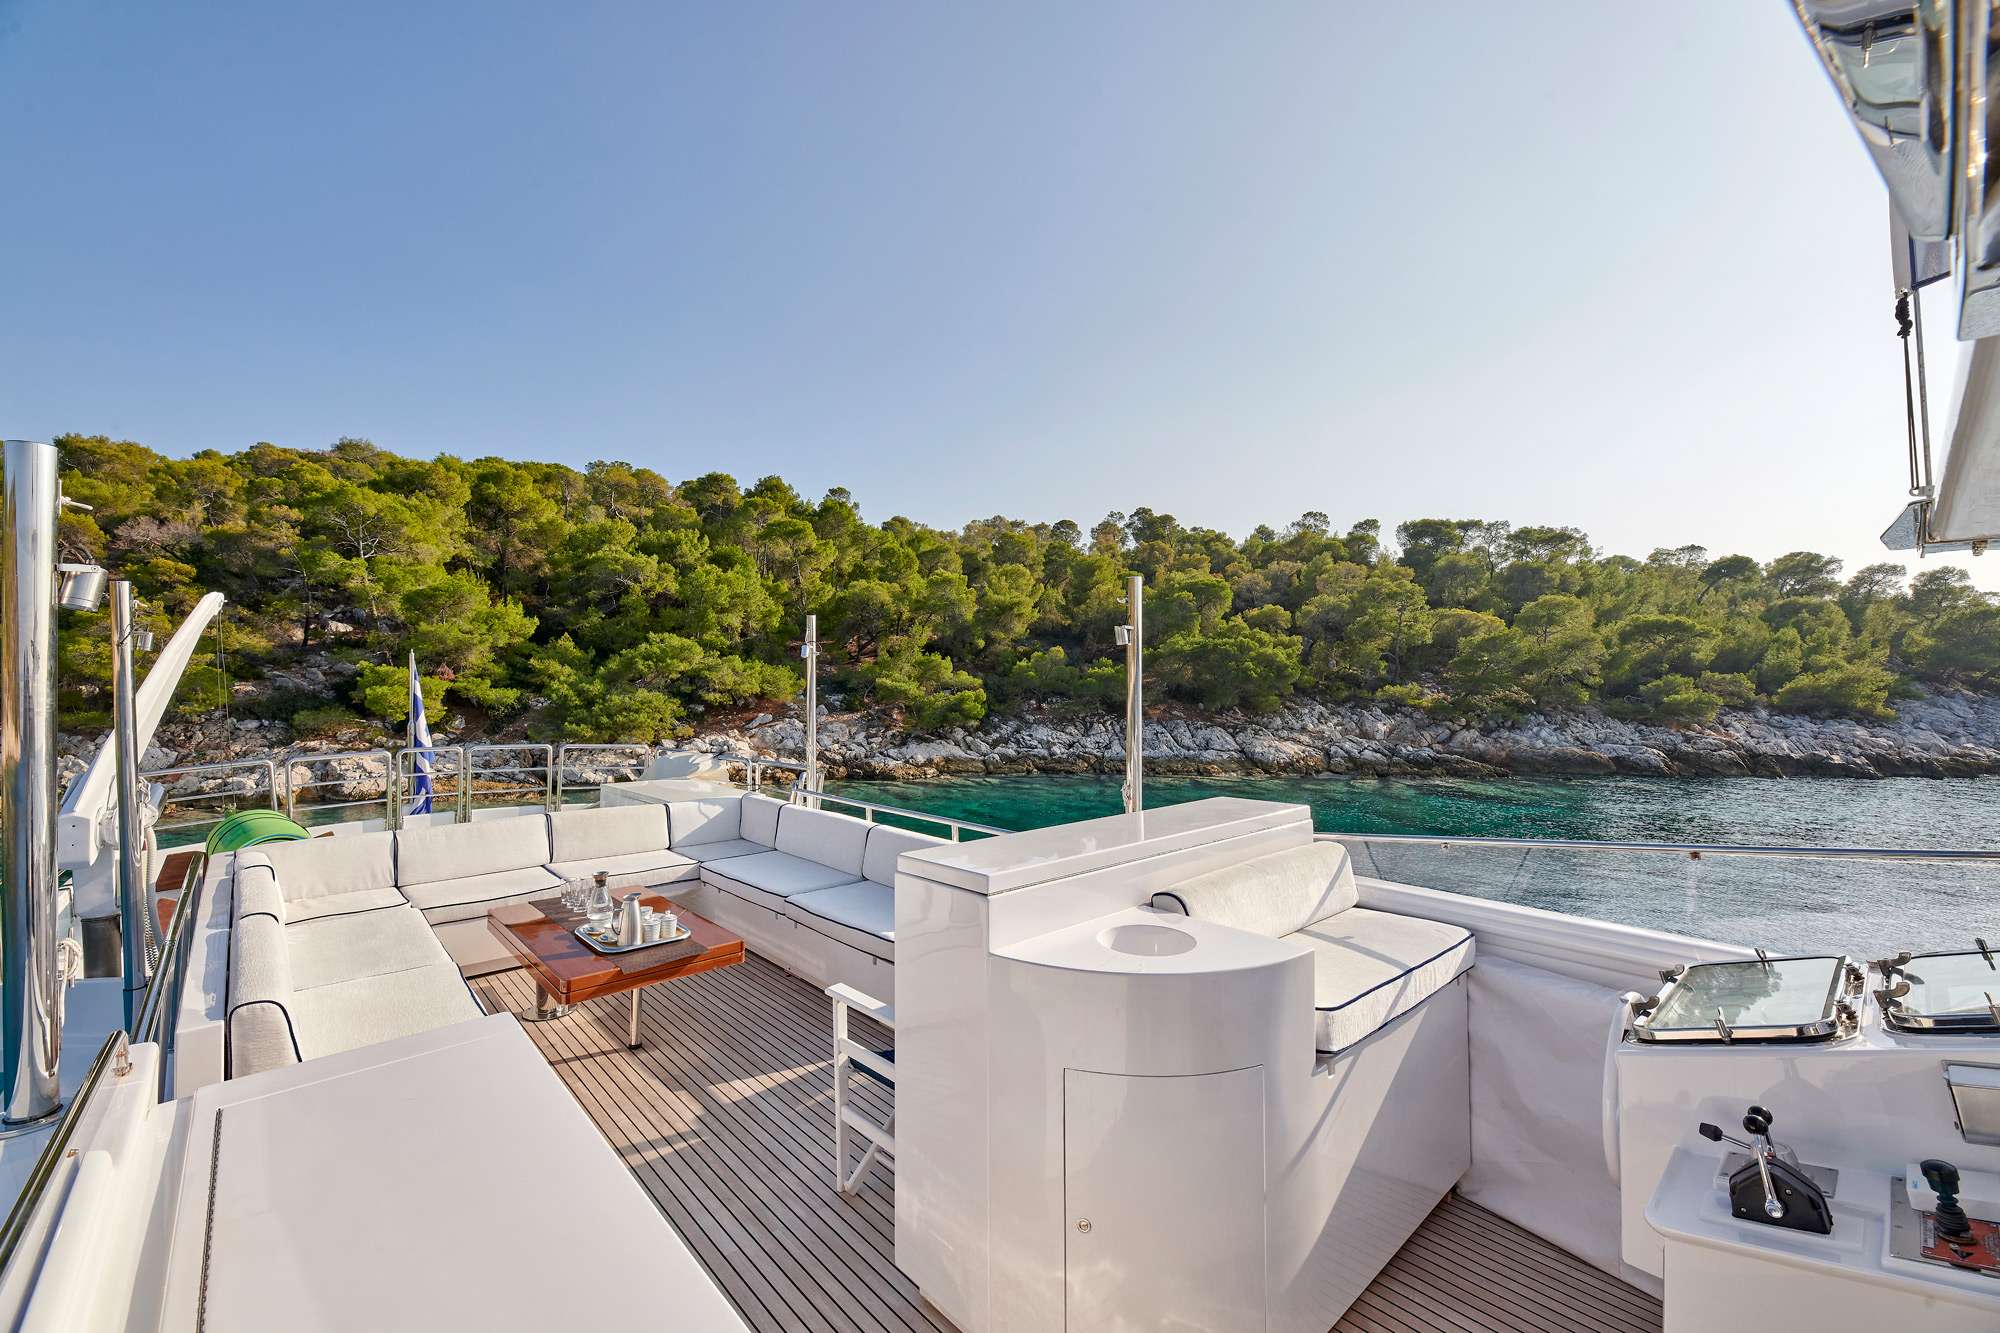 ALAYA - Yacht Charter Sami & Boat hire in Greece 5